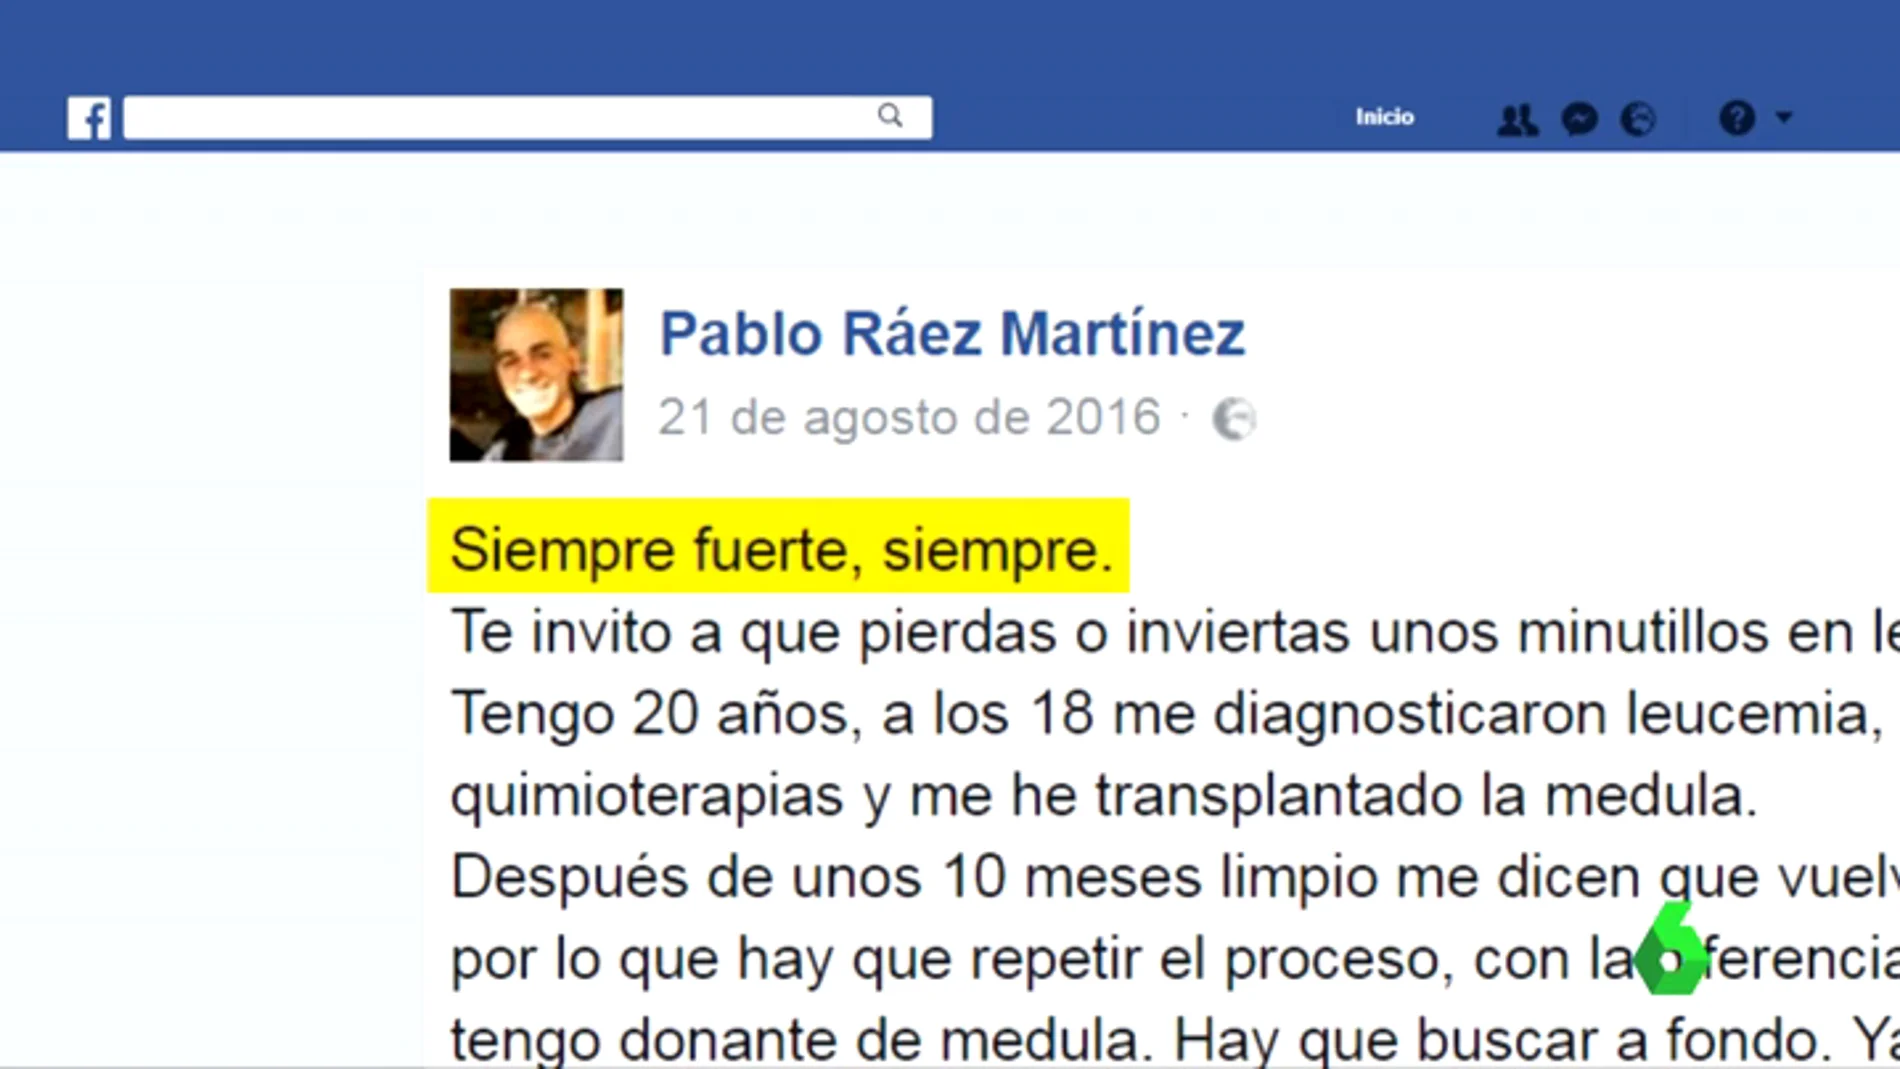 El ejemplo de superación y lucha contra la leucemia, contado por Pablo Ráez en las redes sociales